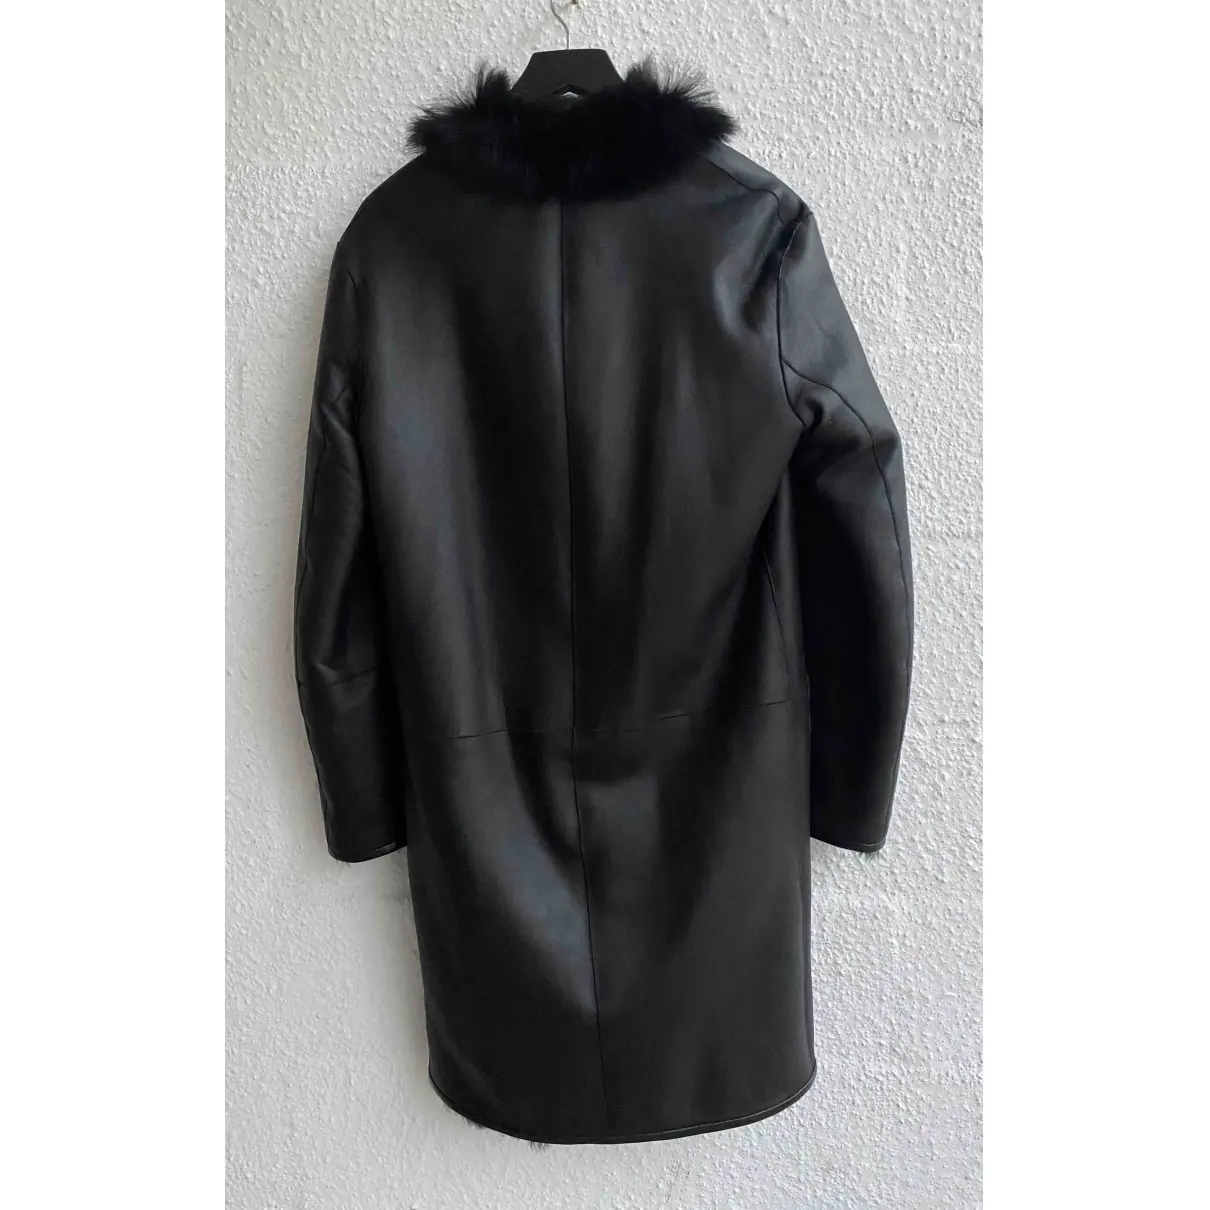 Buy Joseph Leather coat online